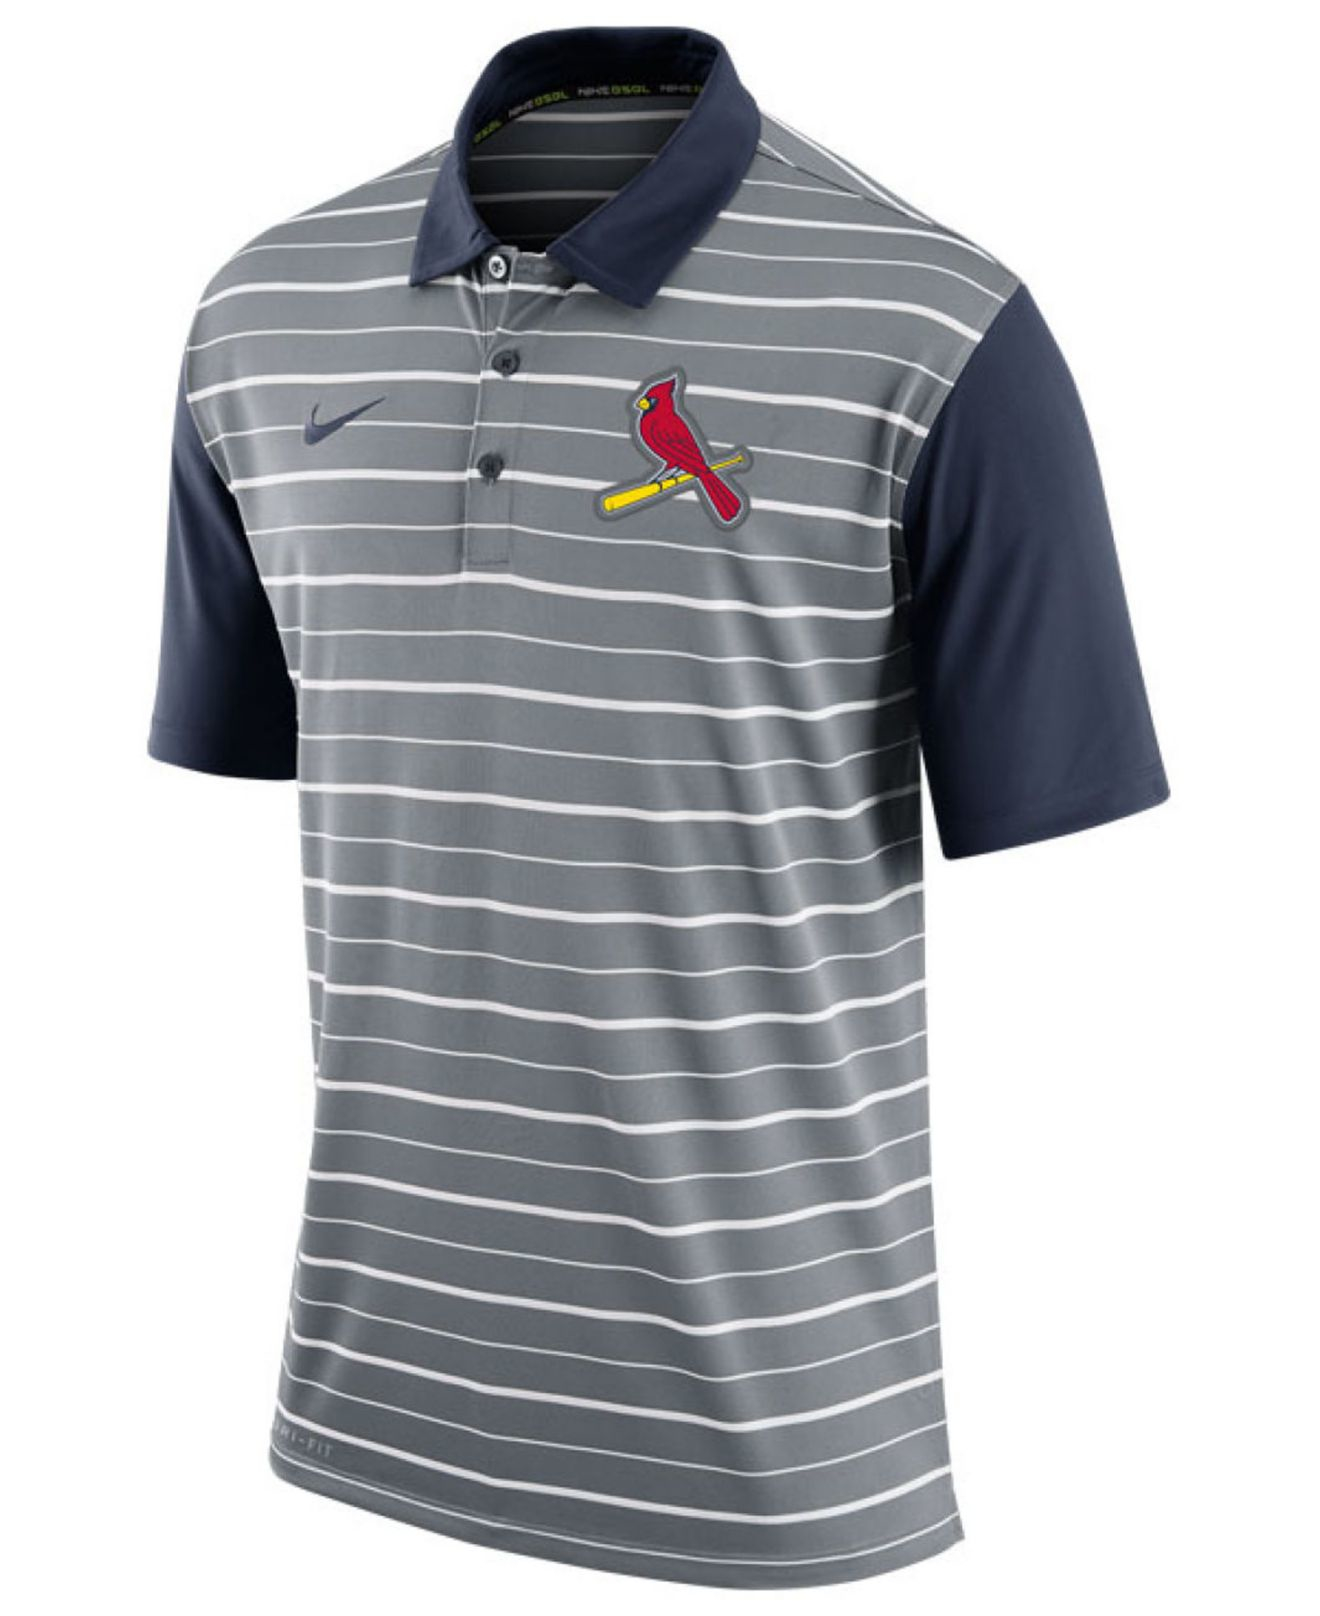 stl cardinals polo shirts